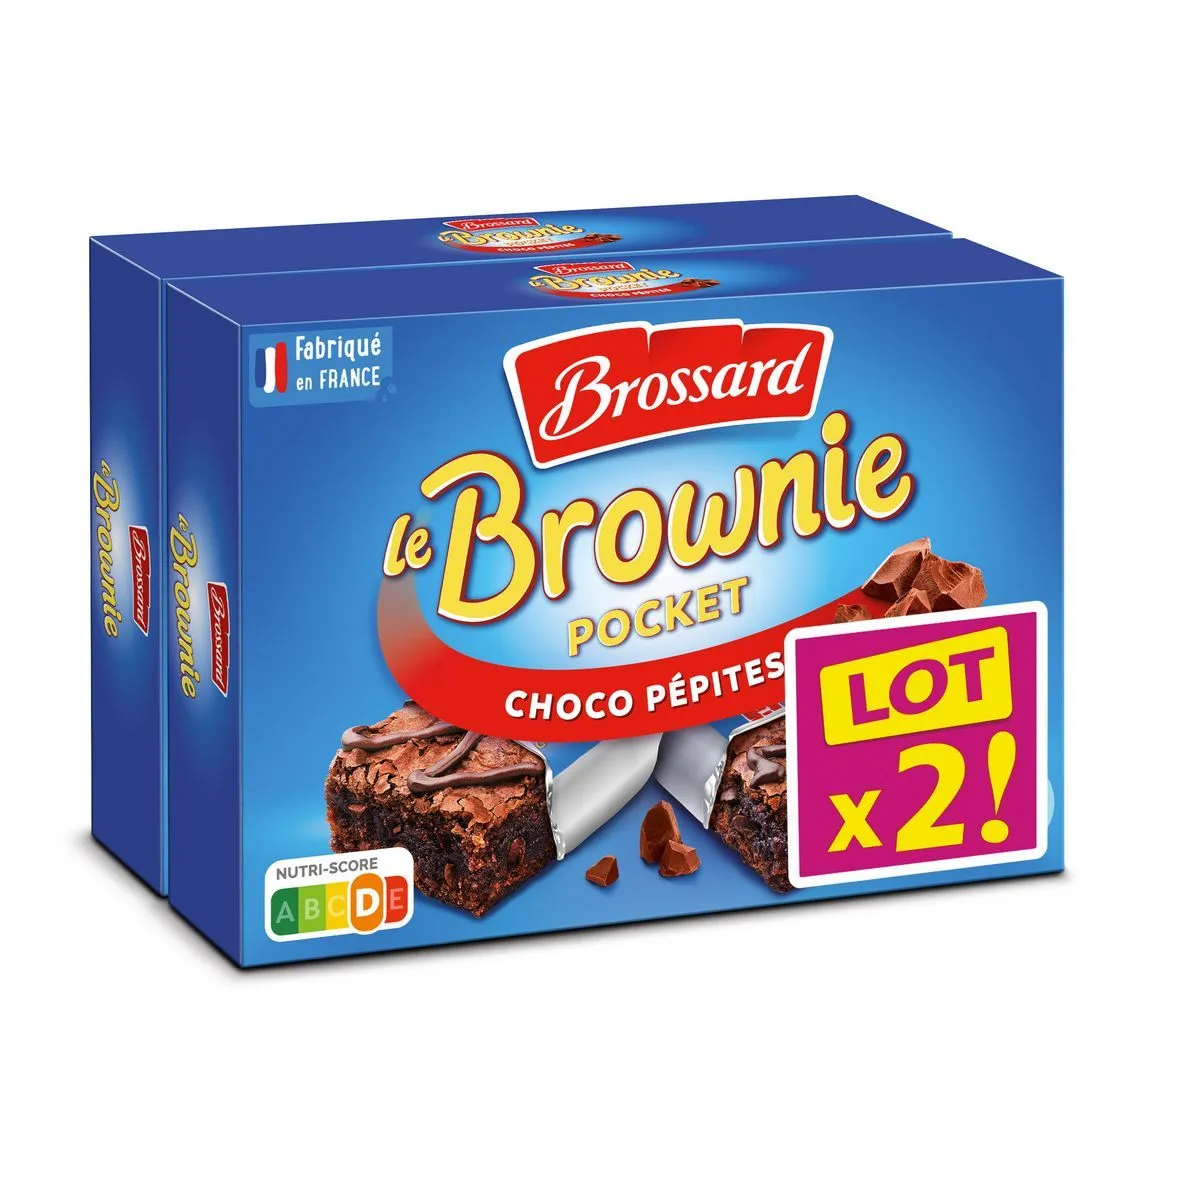 brownie pocket brossard